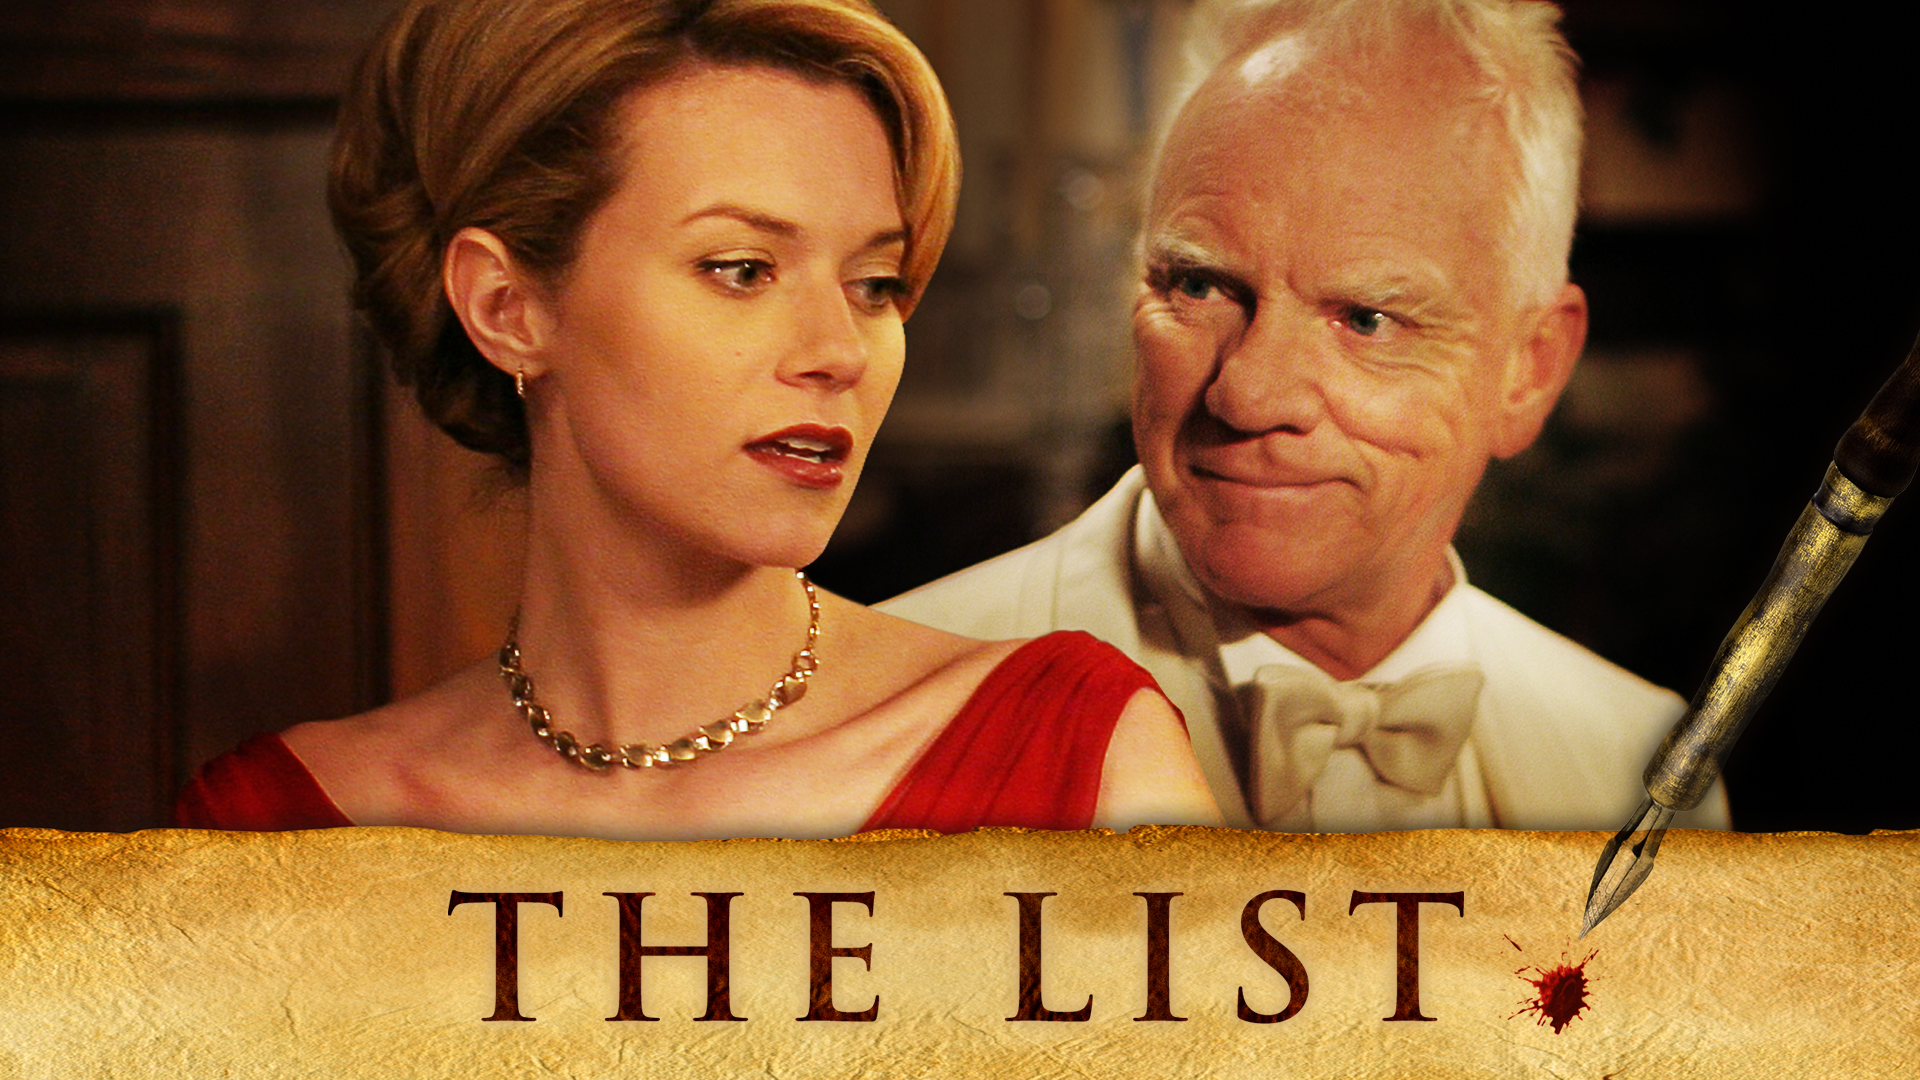 The List (2007)